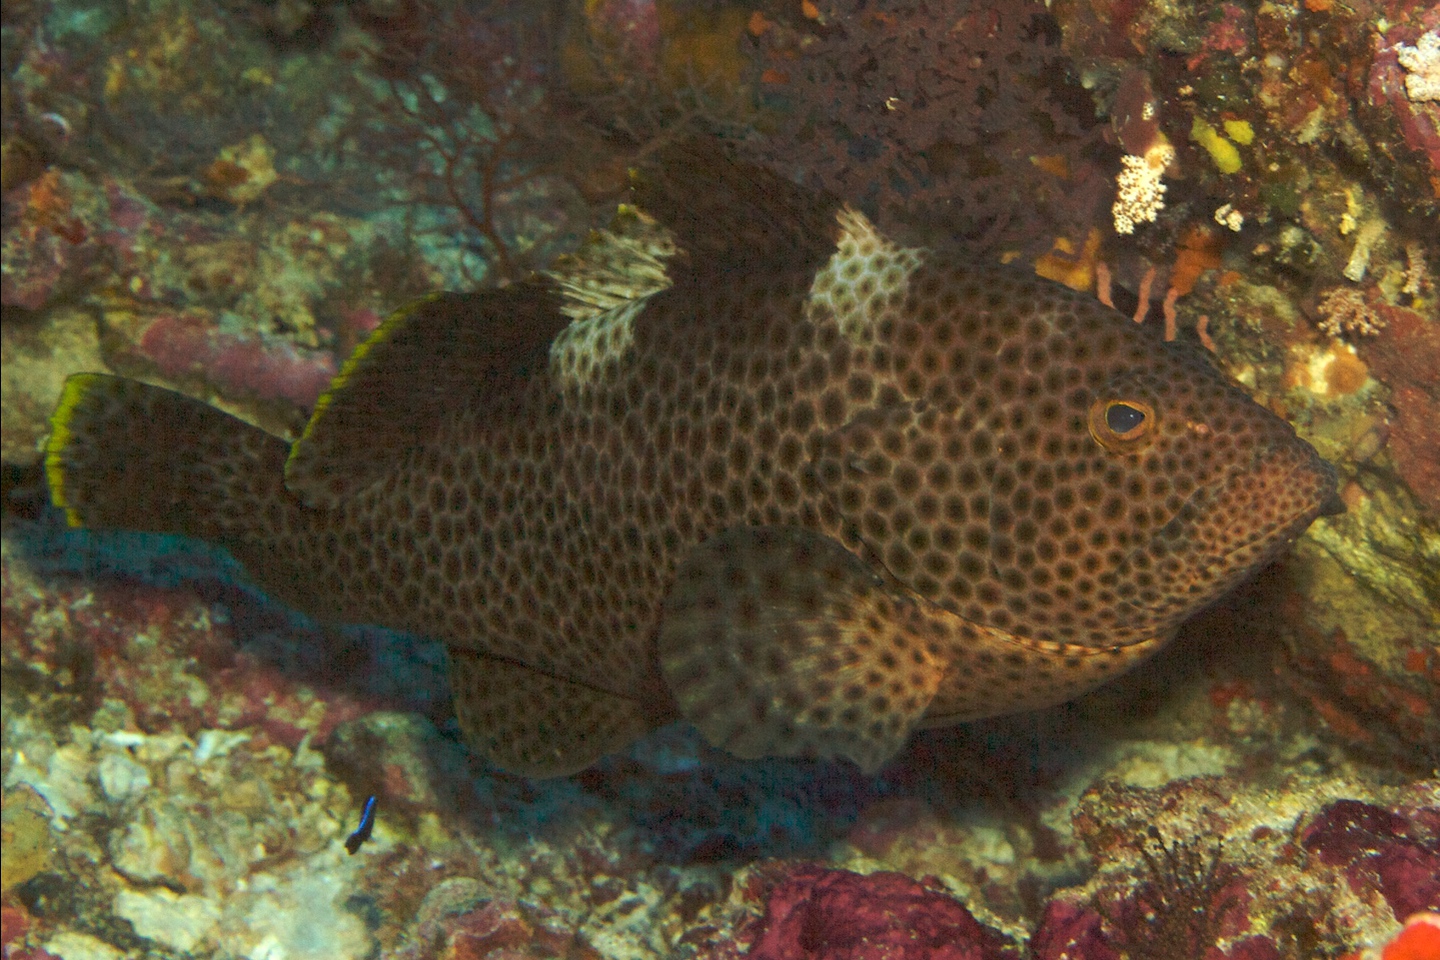 Highfin grouper